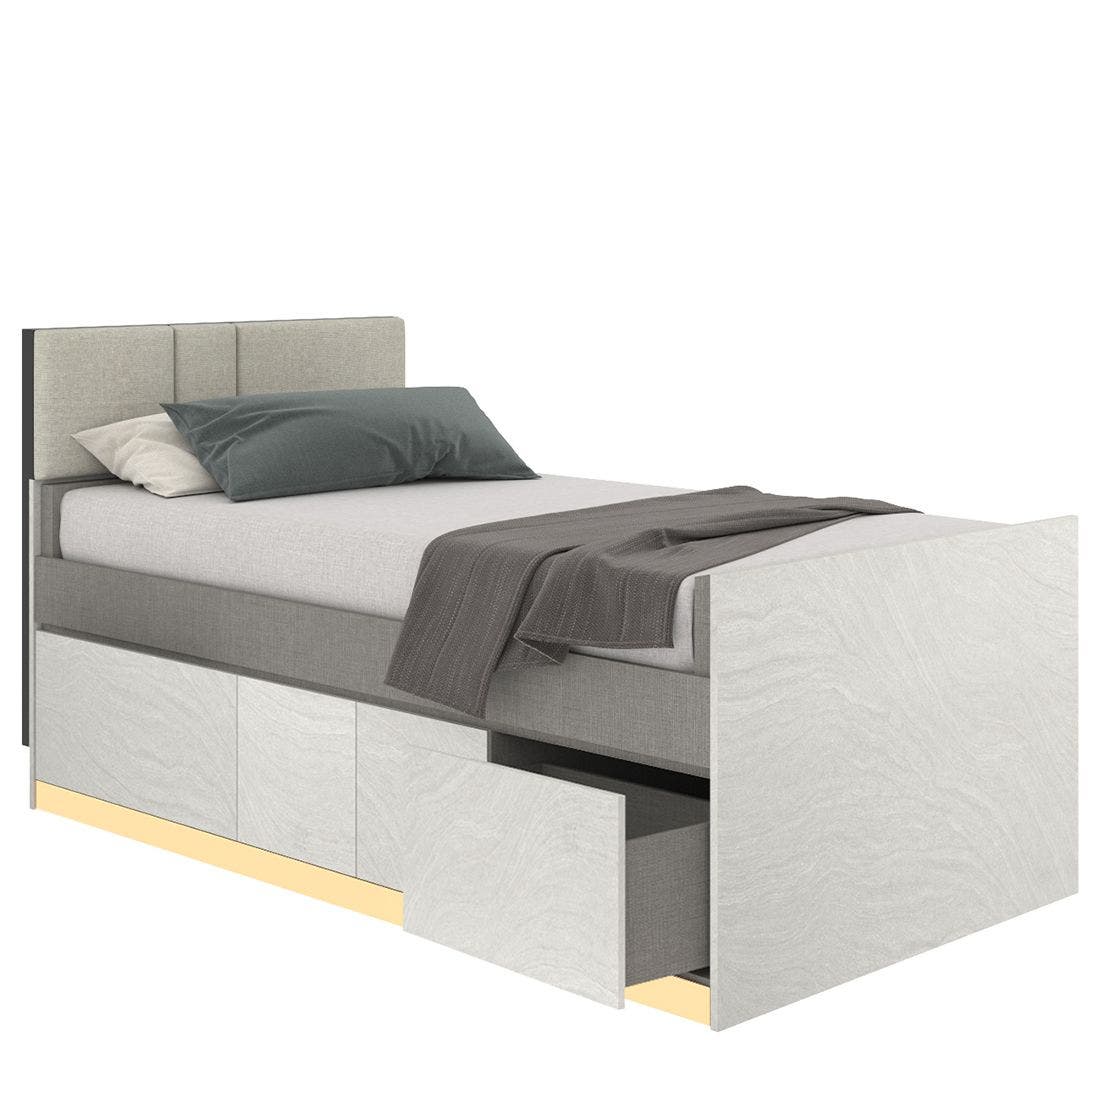 19203270-blisz-furniture-bedroom-furniture-beds-06